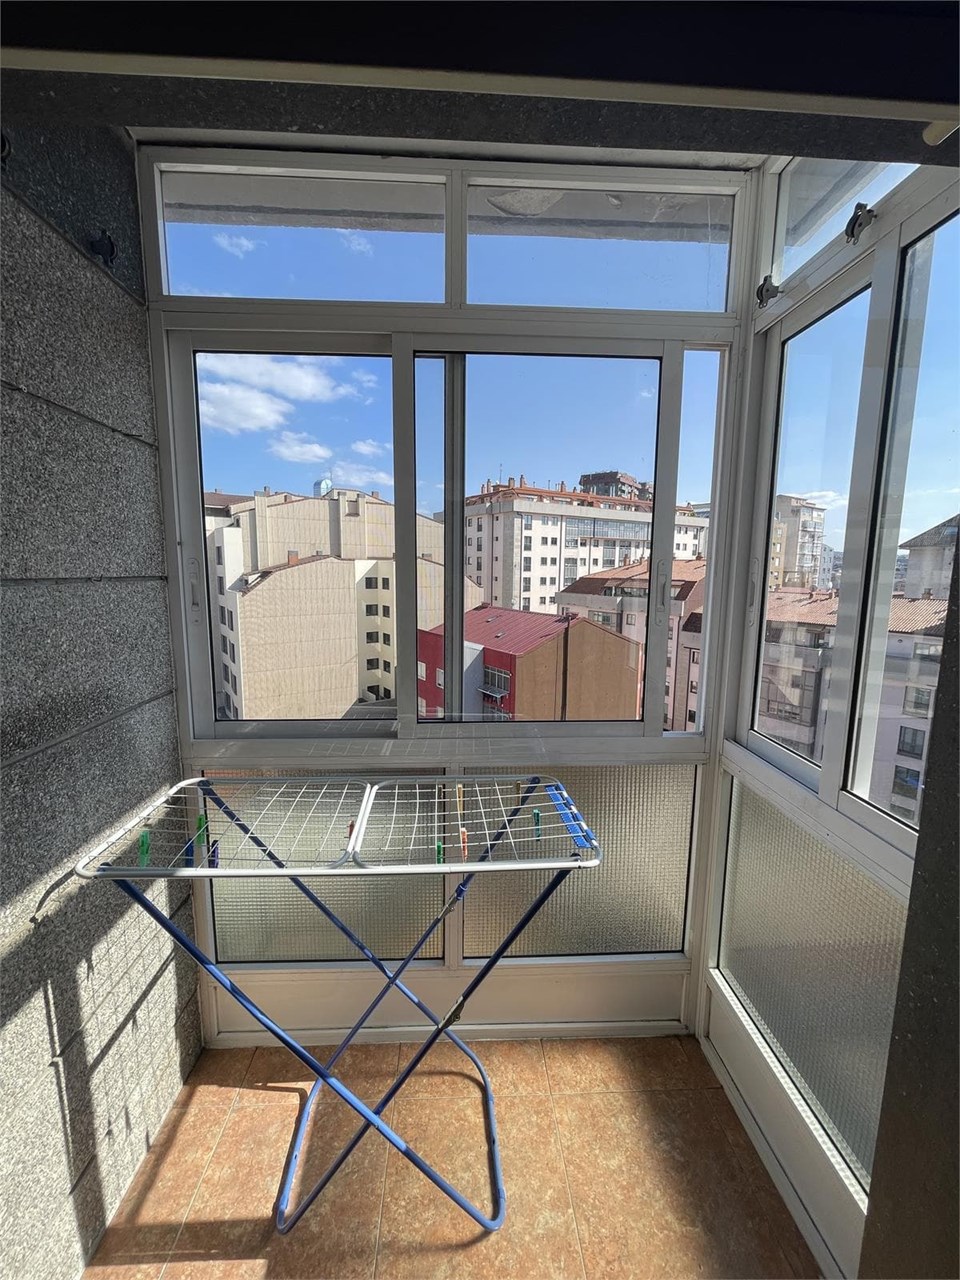 Foto 4 Travesía de Vigo, piso alto de 4 dormitorios